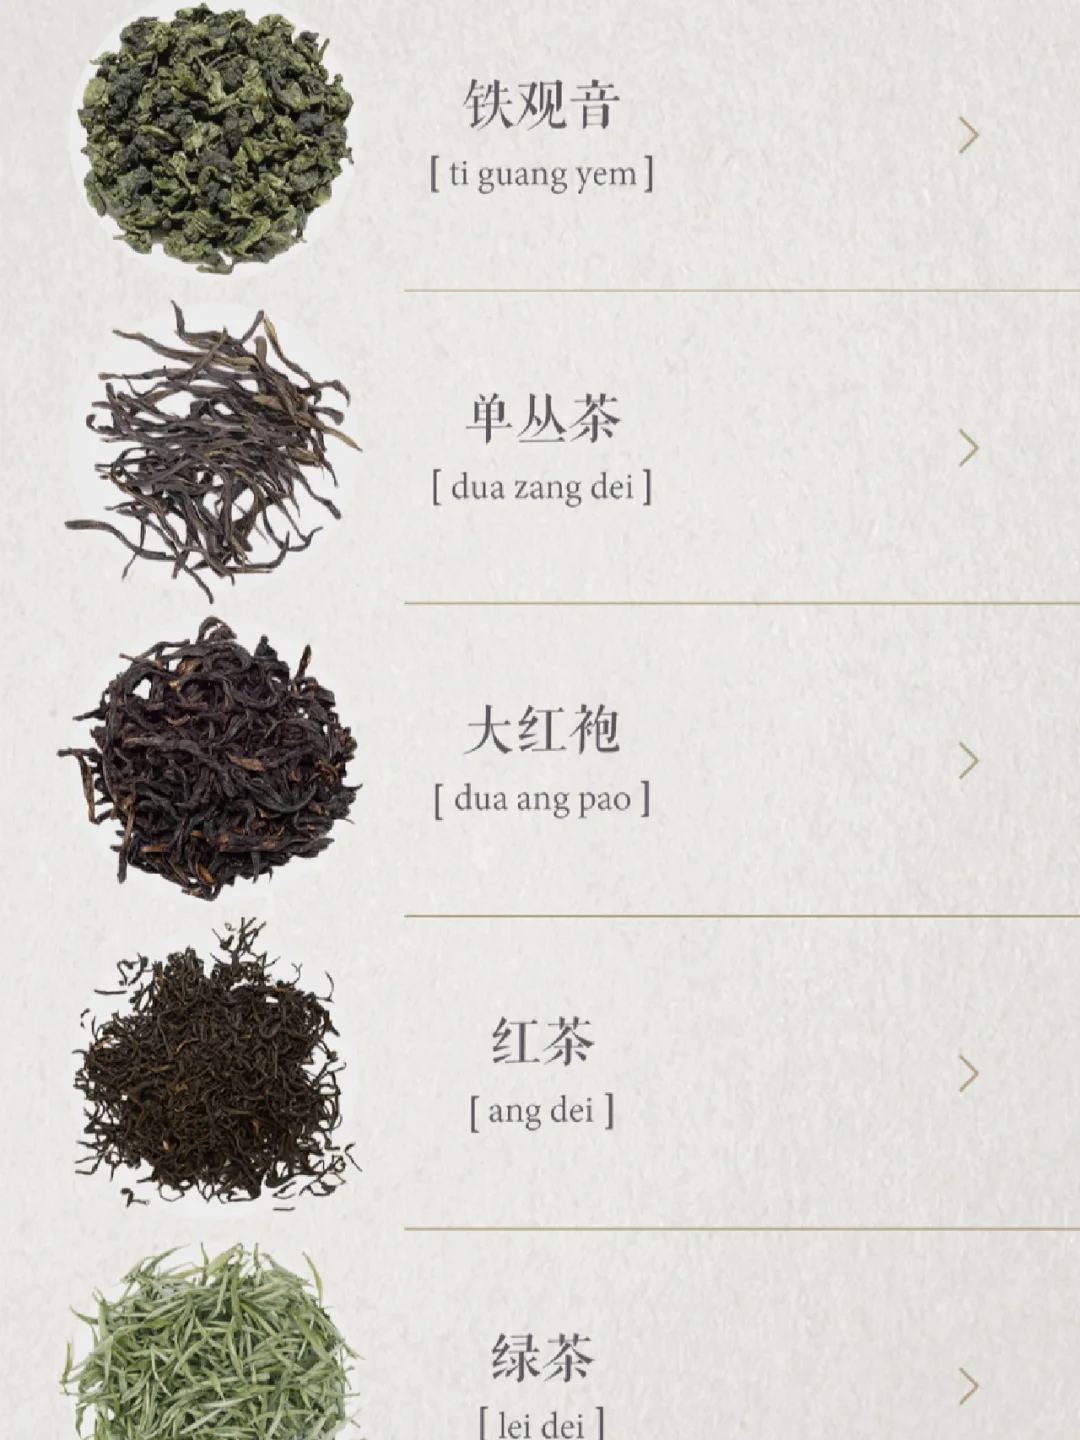 关于品茶·分享审美极佳的app【食茶】